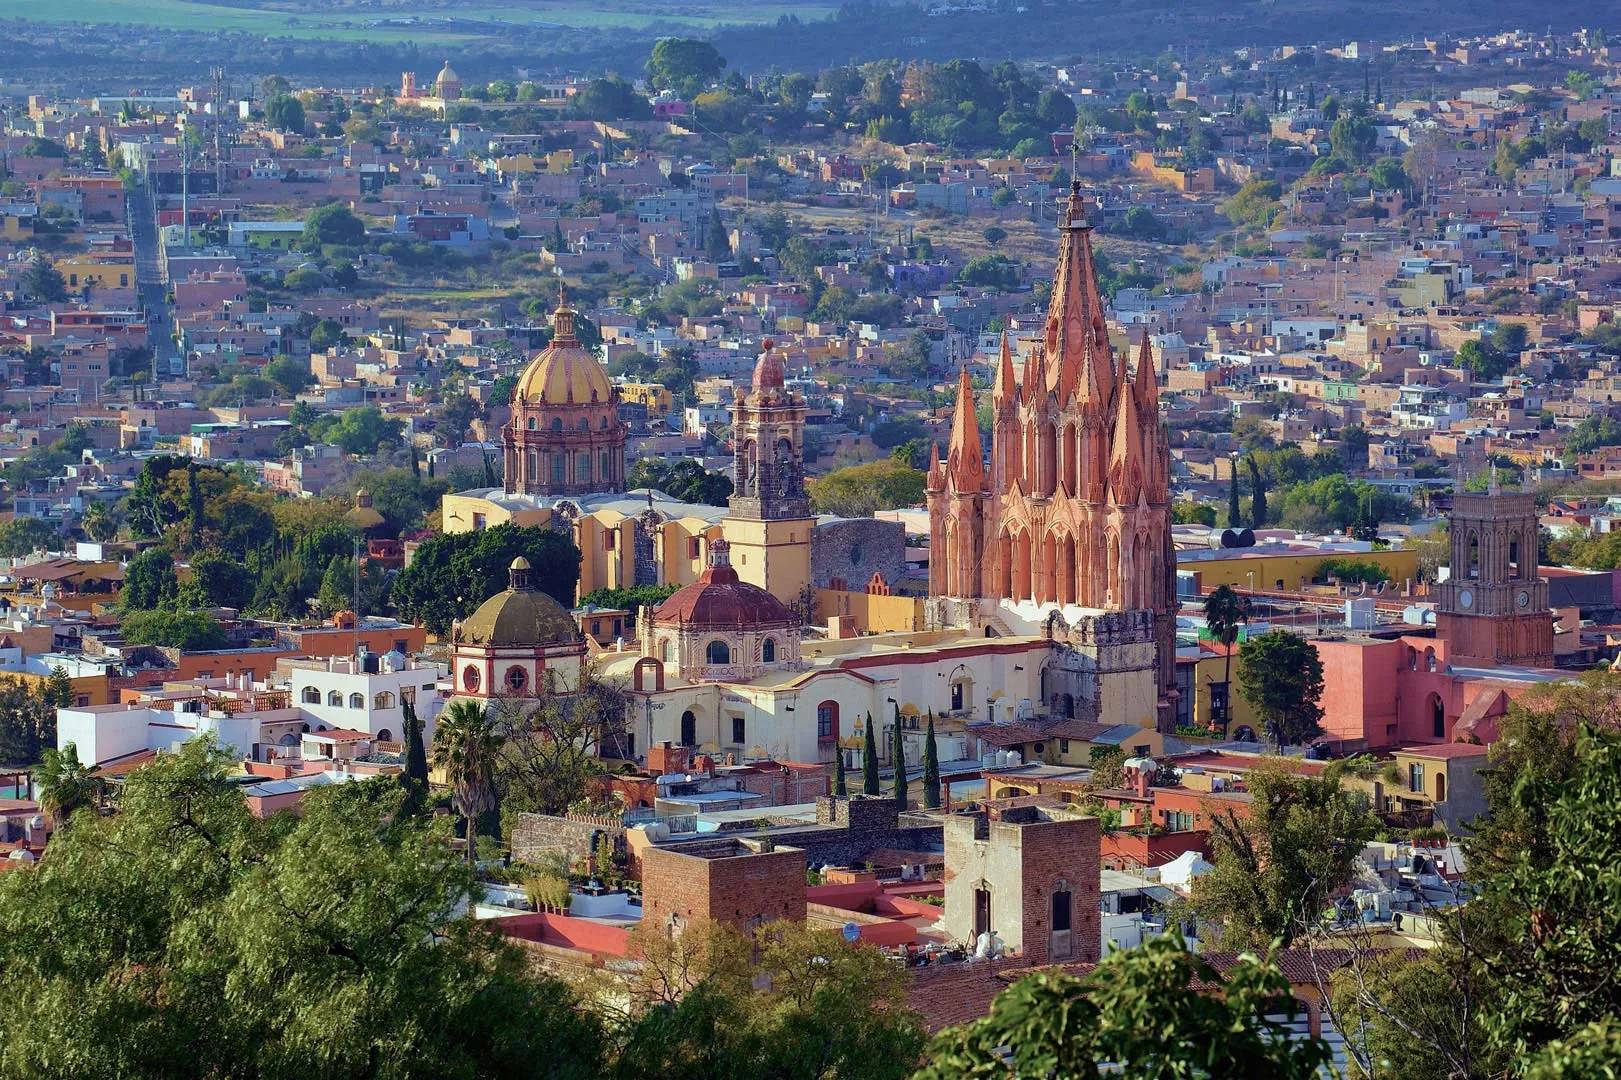 Nota sobre Explorando el sitio arqueológico de Plazuelas, Guanajuato